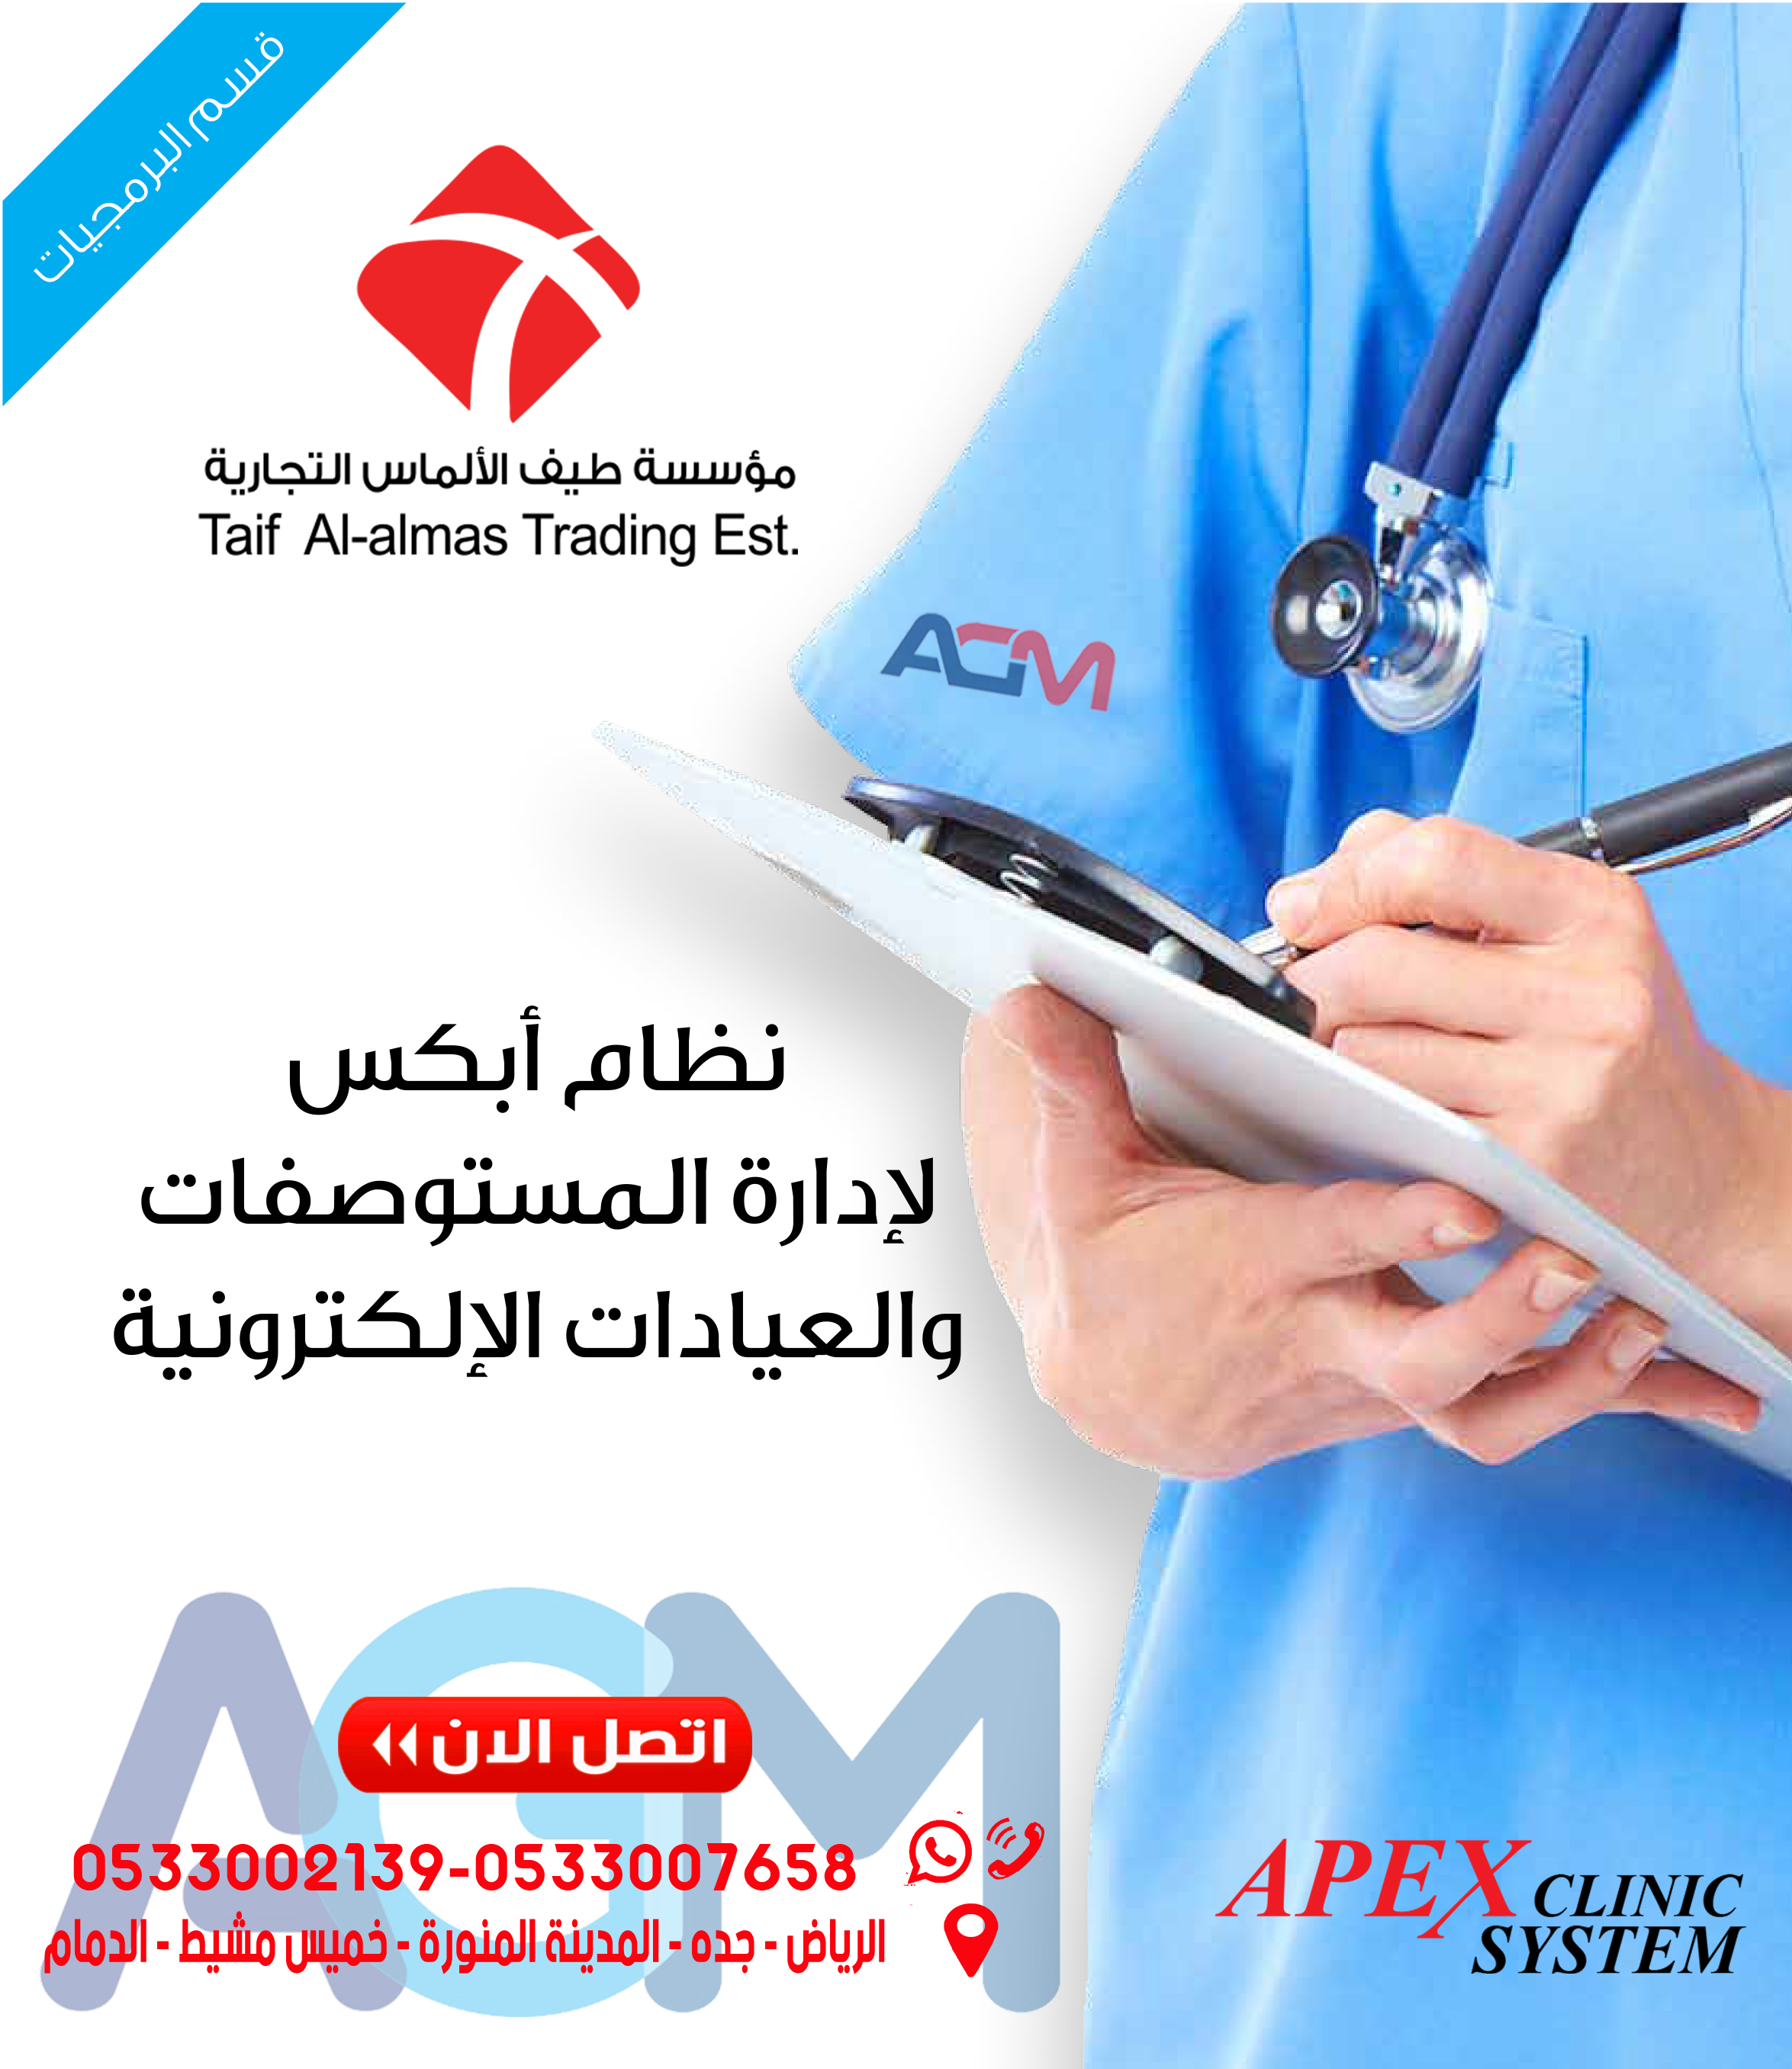 برنامج للعيادات -المراكز الطبية - مستوصفات-مستشفيات -مراكز التجميل